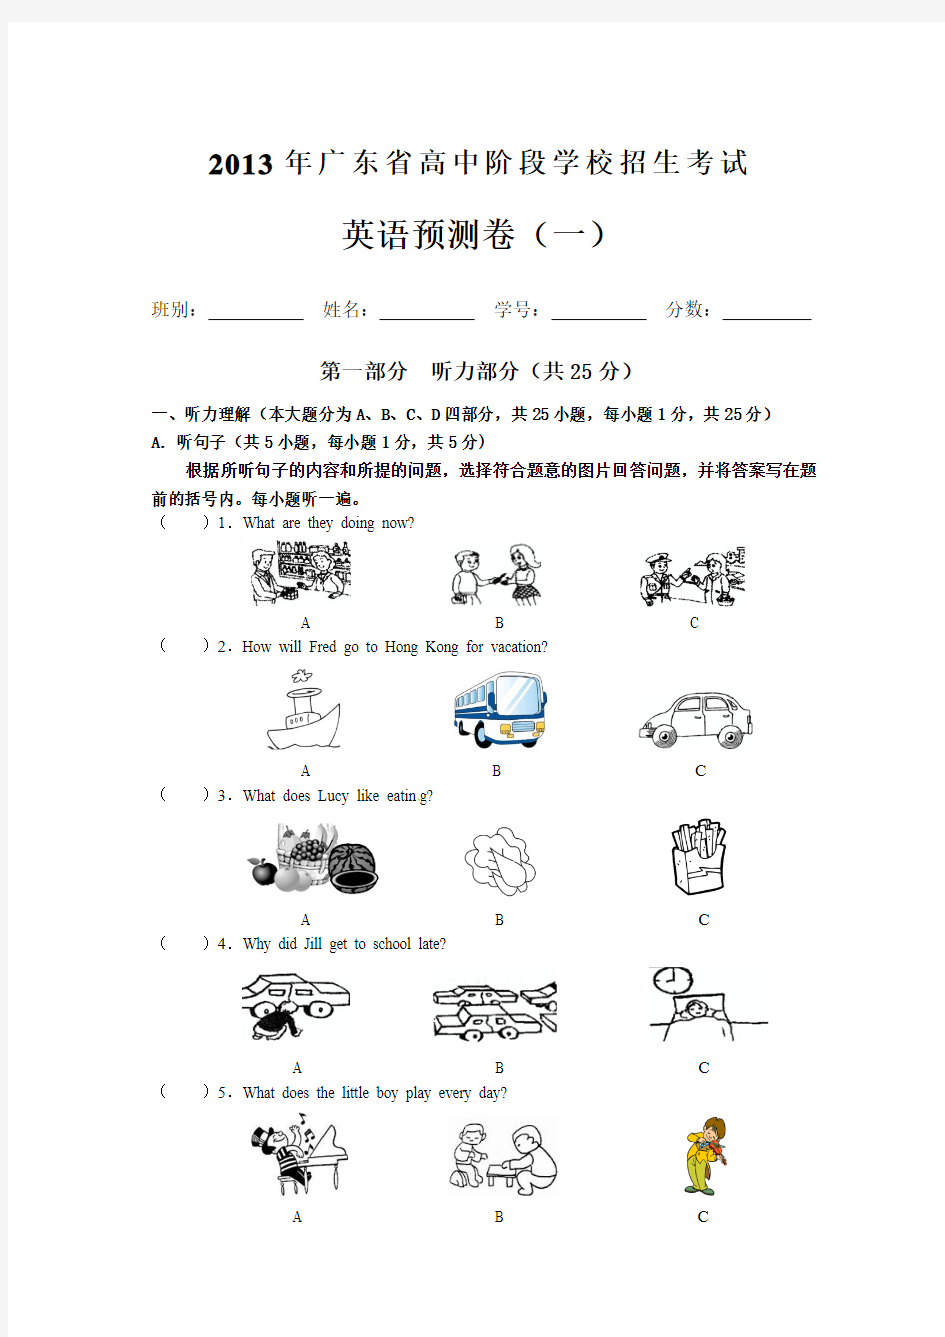 2013年广东省初中毕业生学业考试预测英语试题(一)及答案